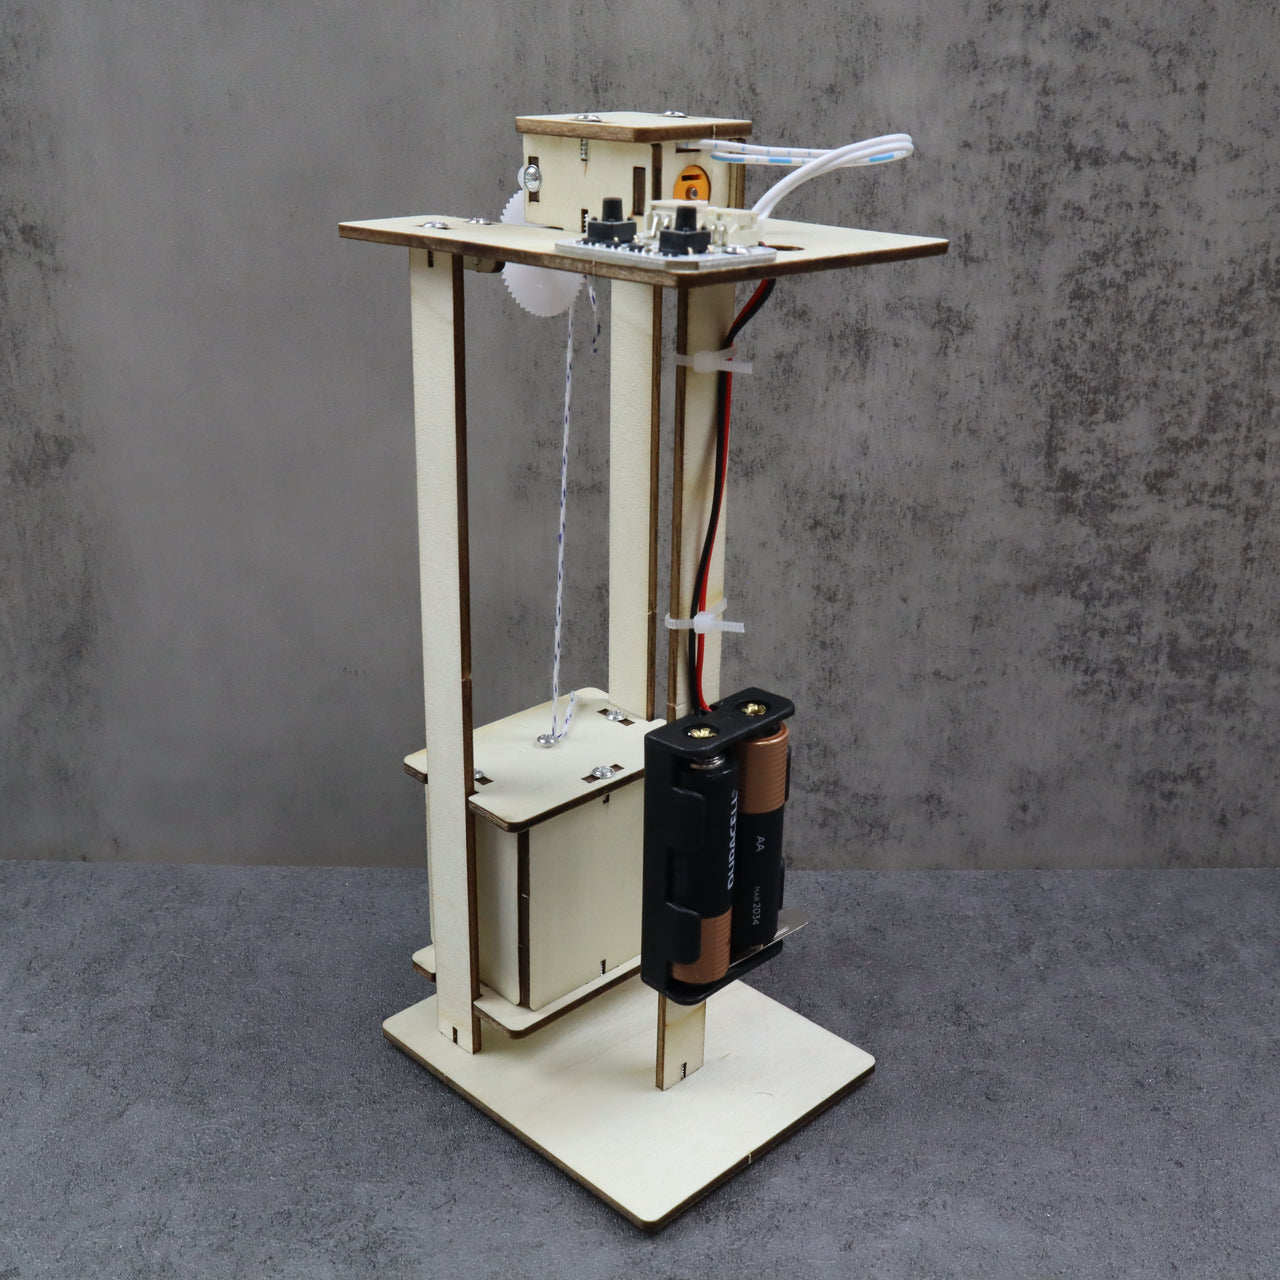 CreateKit Electric Elevator DIY Kit